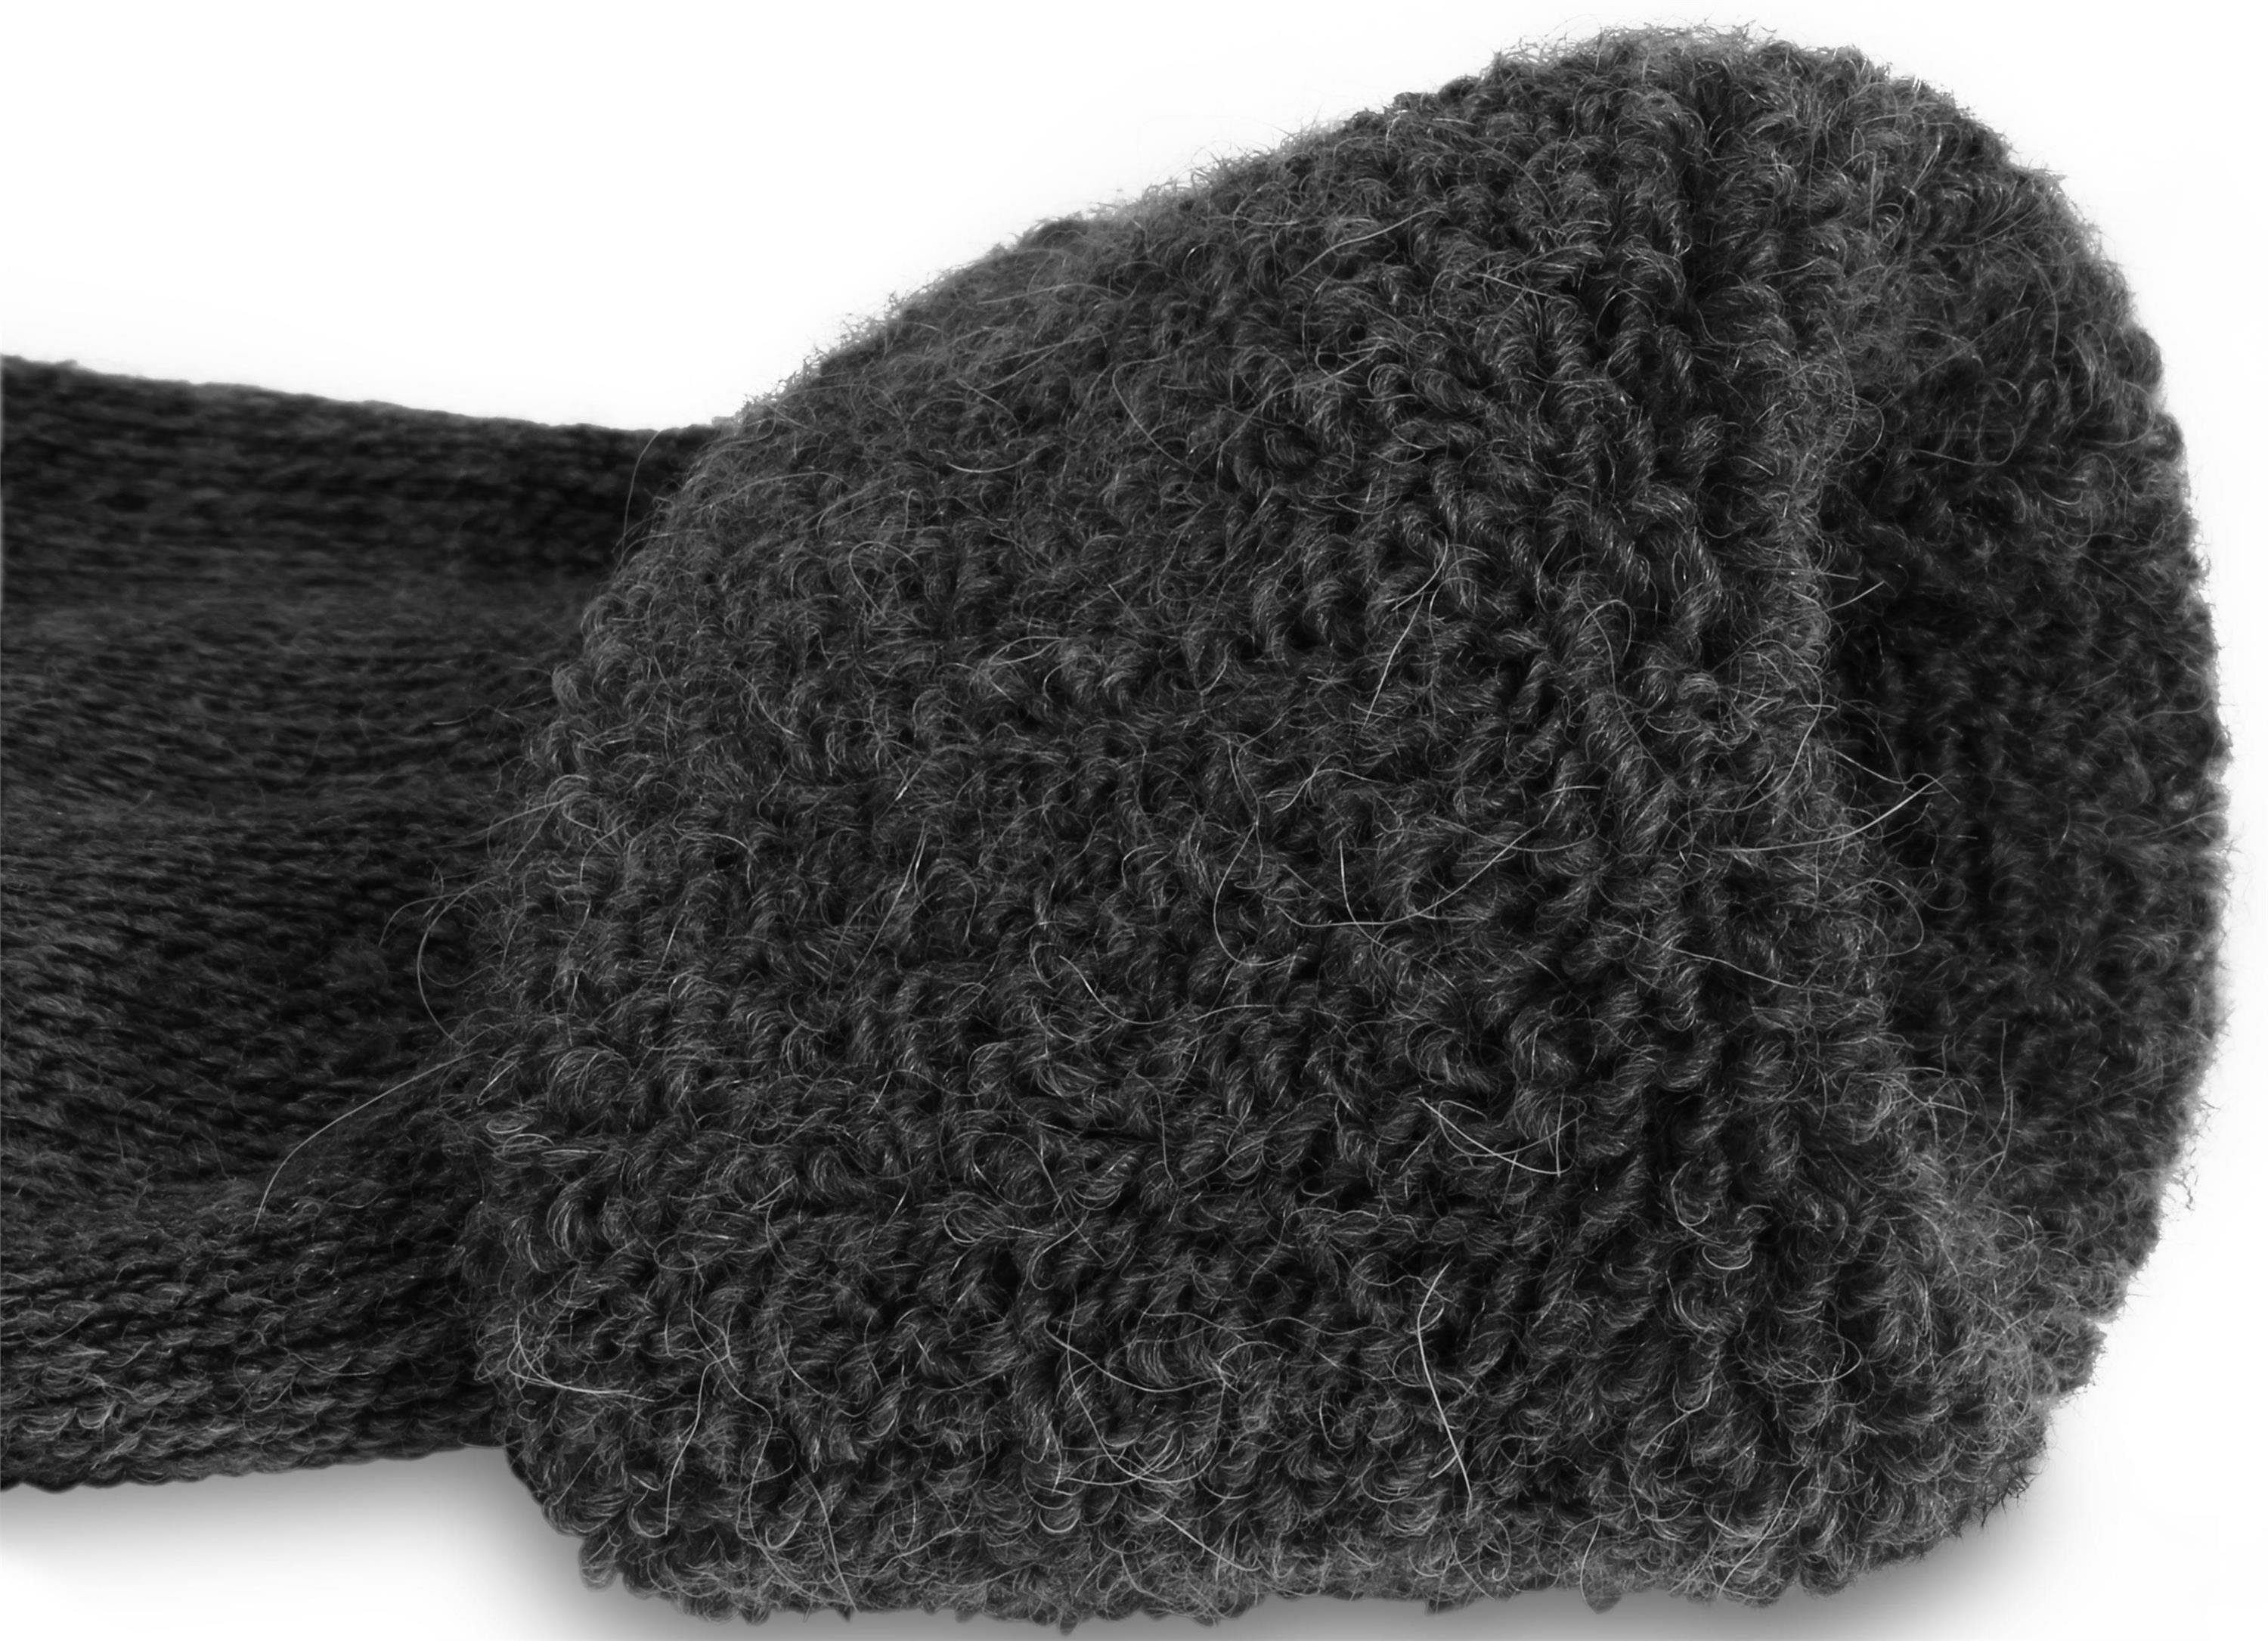 normani ABS-Socken mit (1 Paar) Anthrazit ABS-Druck Alpaka-Wolle hochwertige Alpaka-Wollsocken